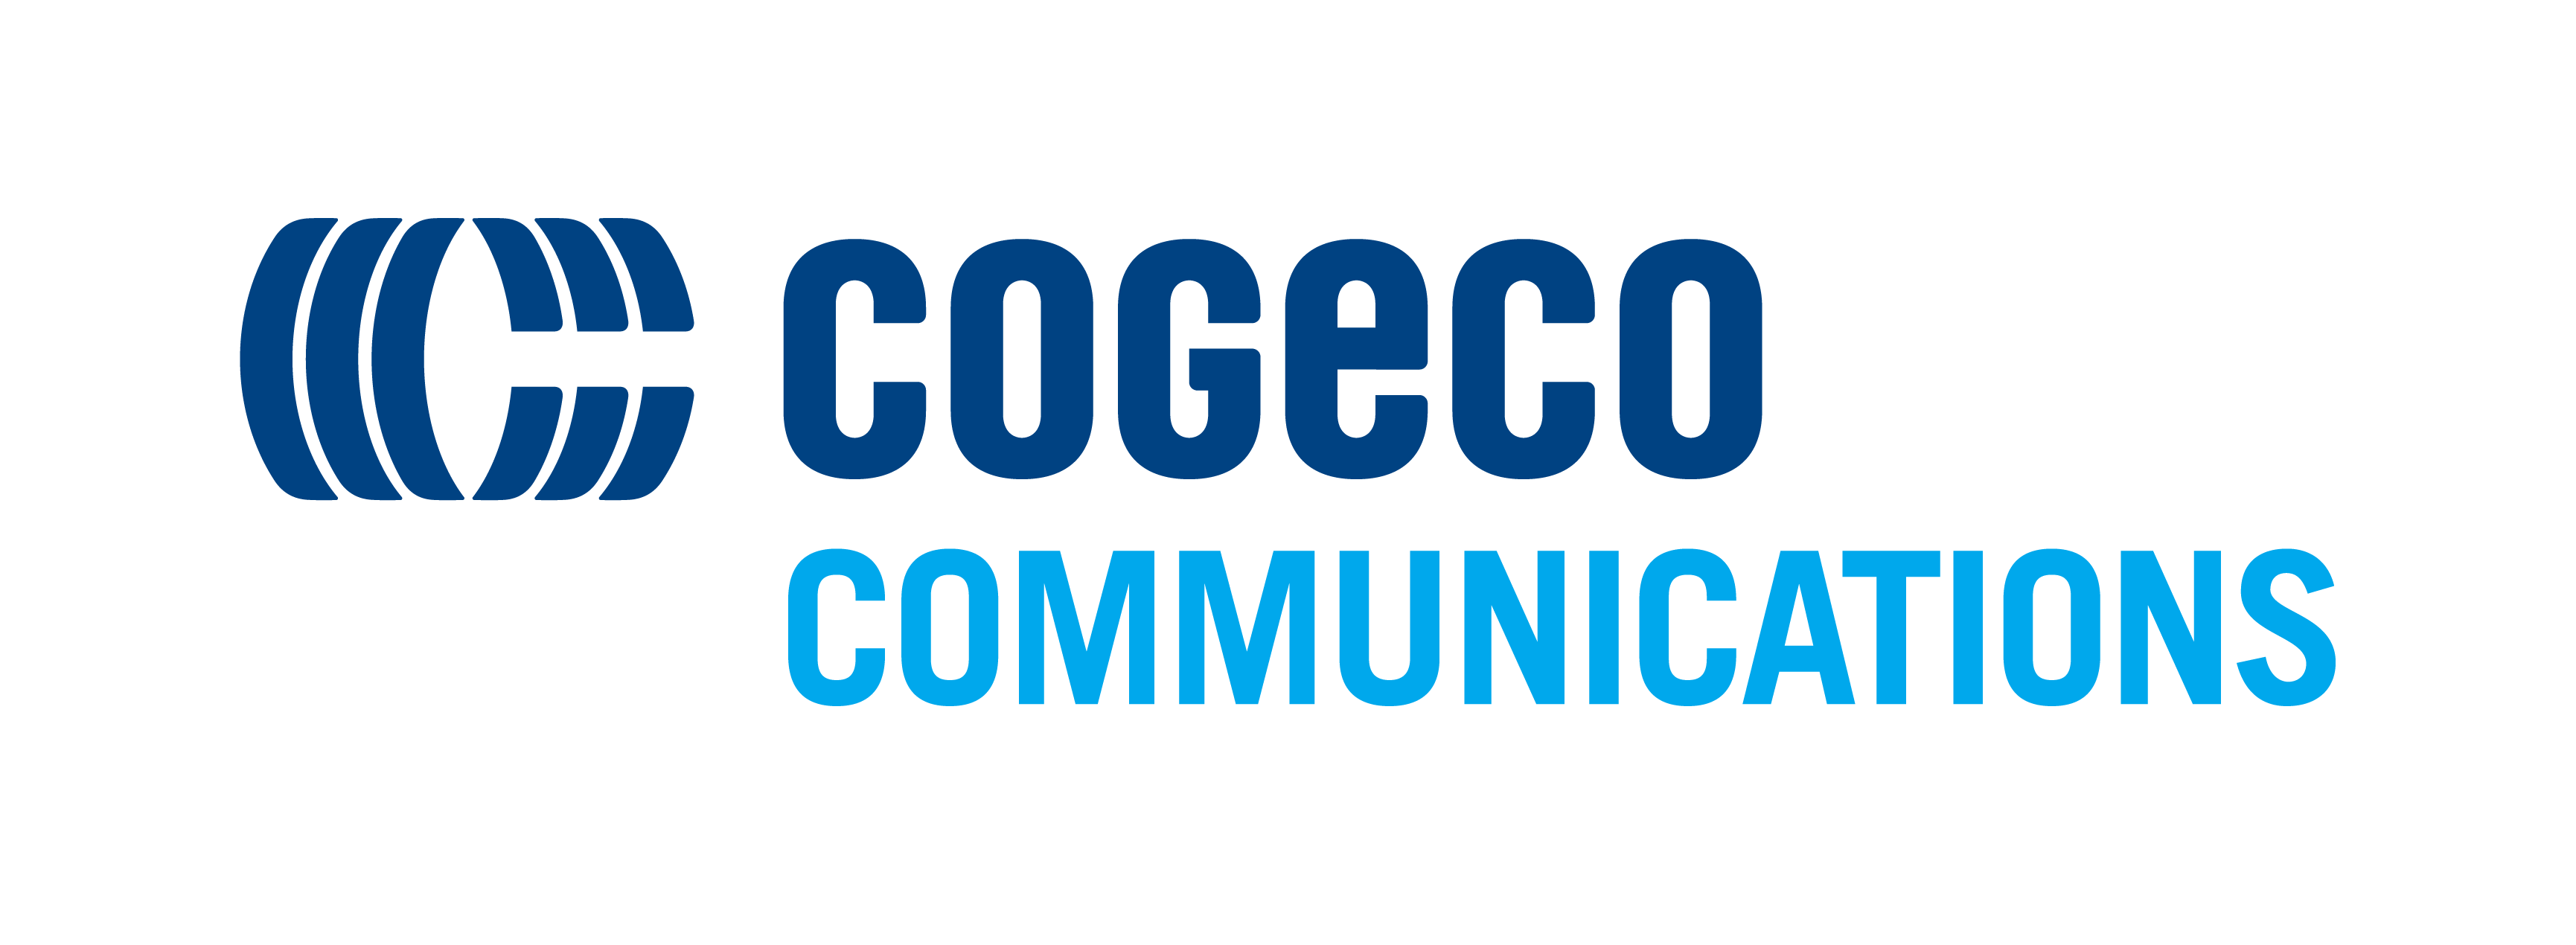 Cogeco Communications Inc. logo